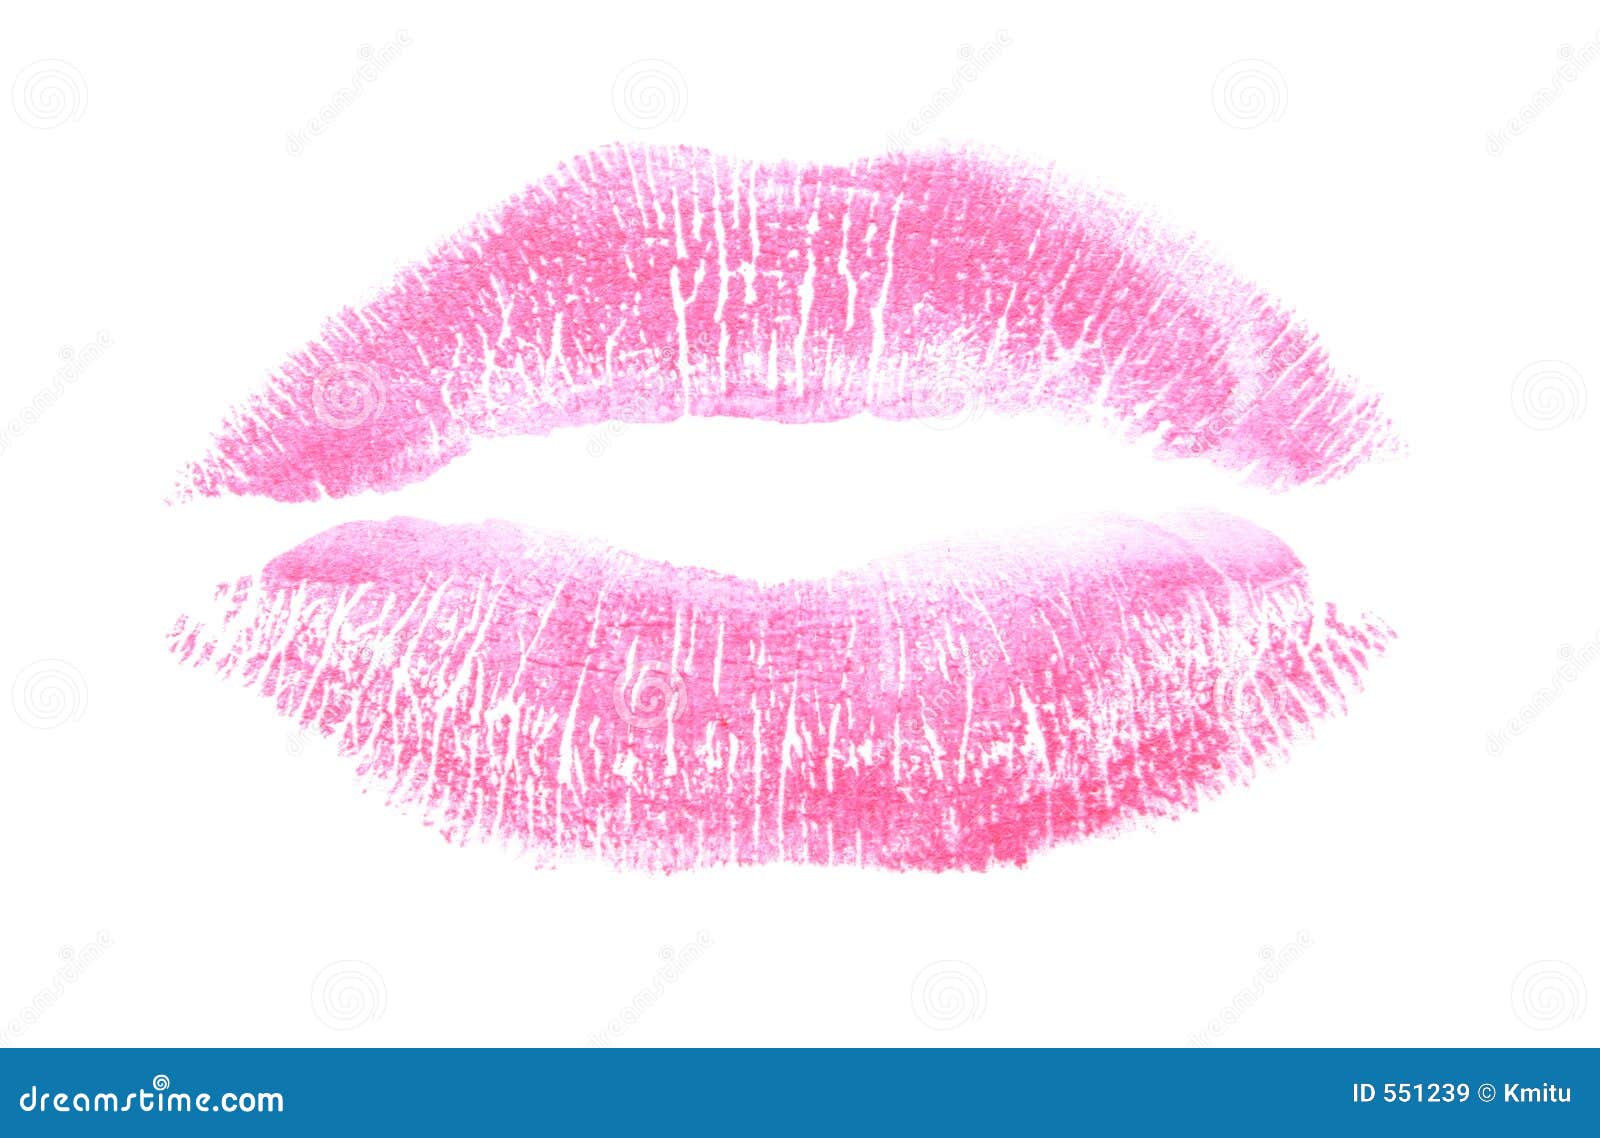 Hôn đánh dấu hồng: Hãy xem hình ảnh với đánh dấu hôn hồng tươi trên đôi môi thật đẹp. Sắc hồng của dấu hôn khiến ai nhìn vào cũng phải ngưỡng mộ. Điều đó càng khiến bạn muốn trải nghiệm cảm giác lưu giữ khoảnh khắc đó thông qua bức ảnh.